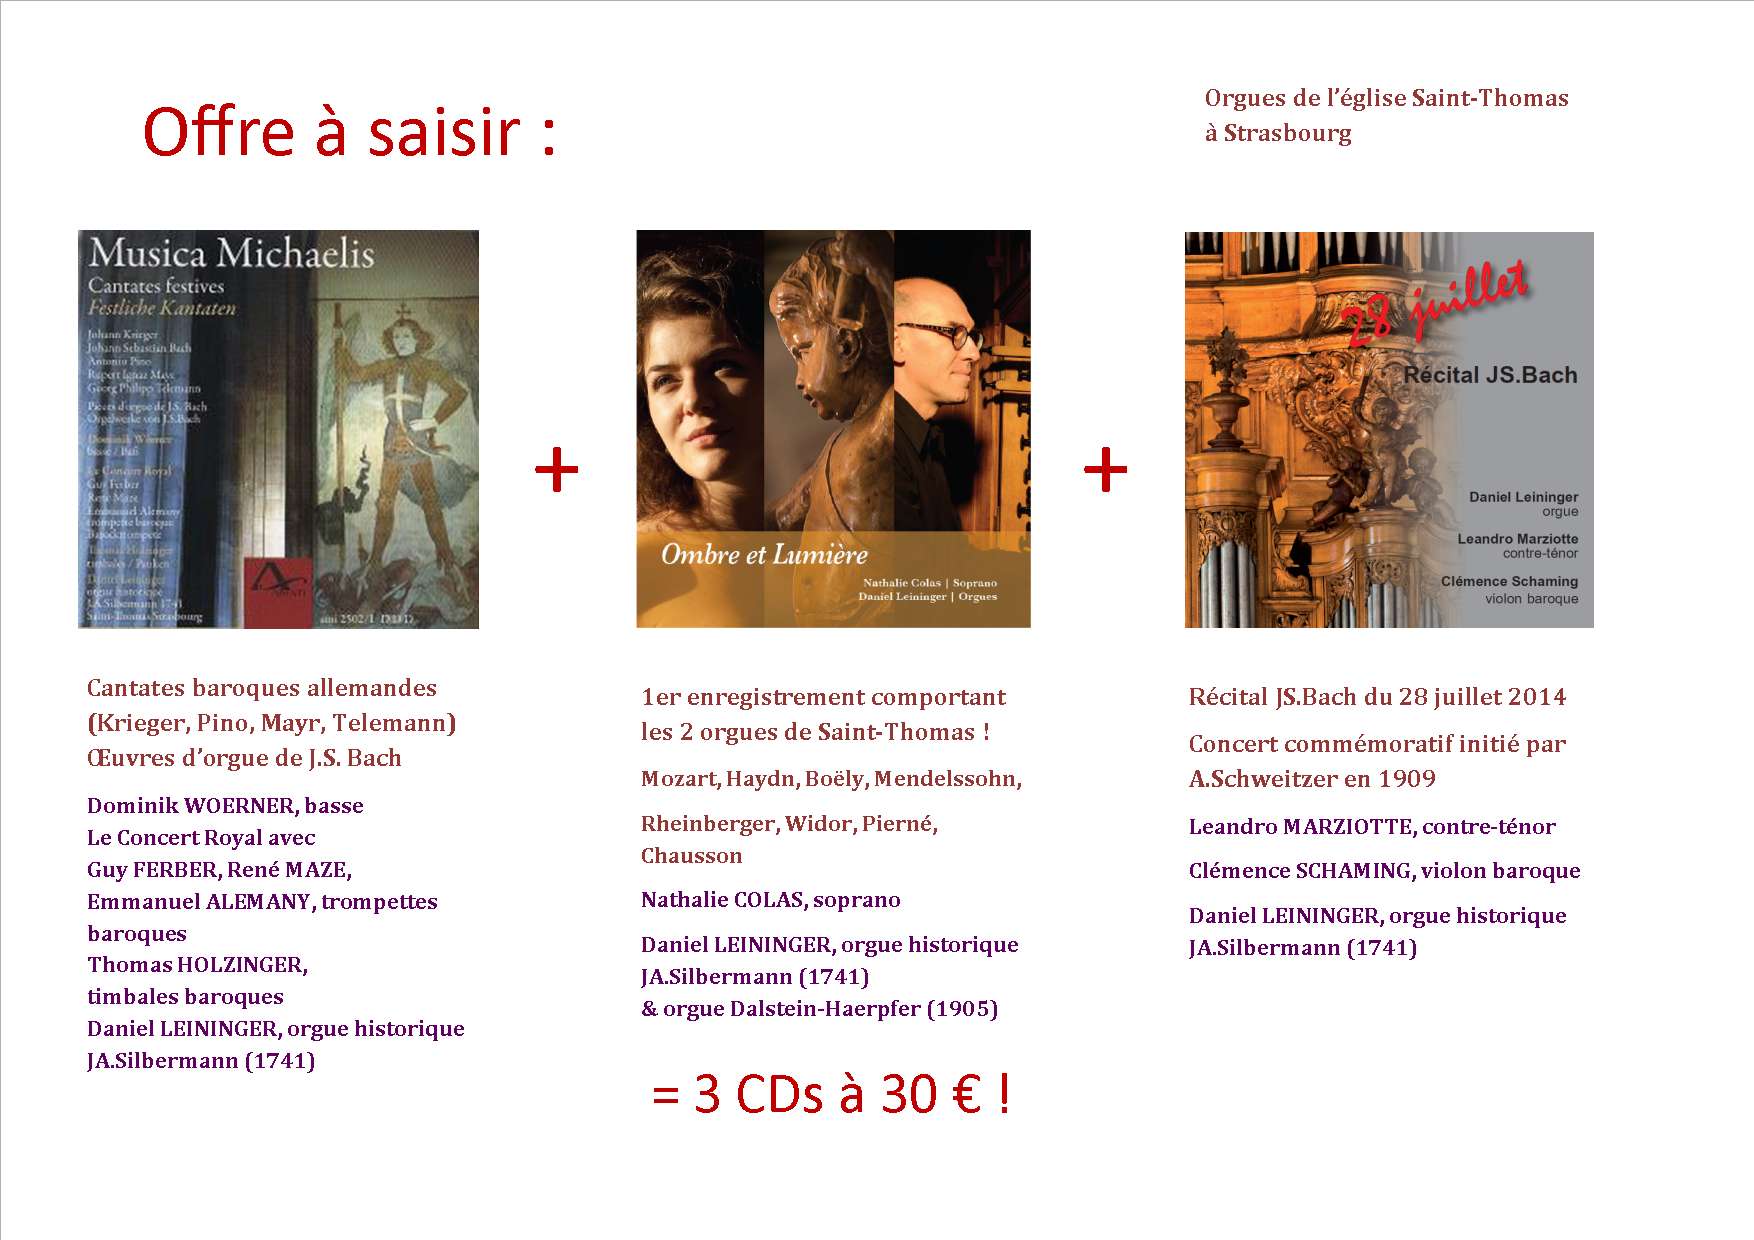 CD Récital JS.Bach - 28 juillet 2014